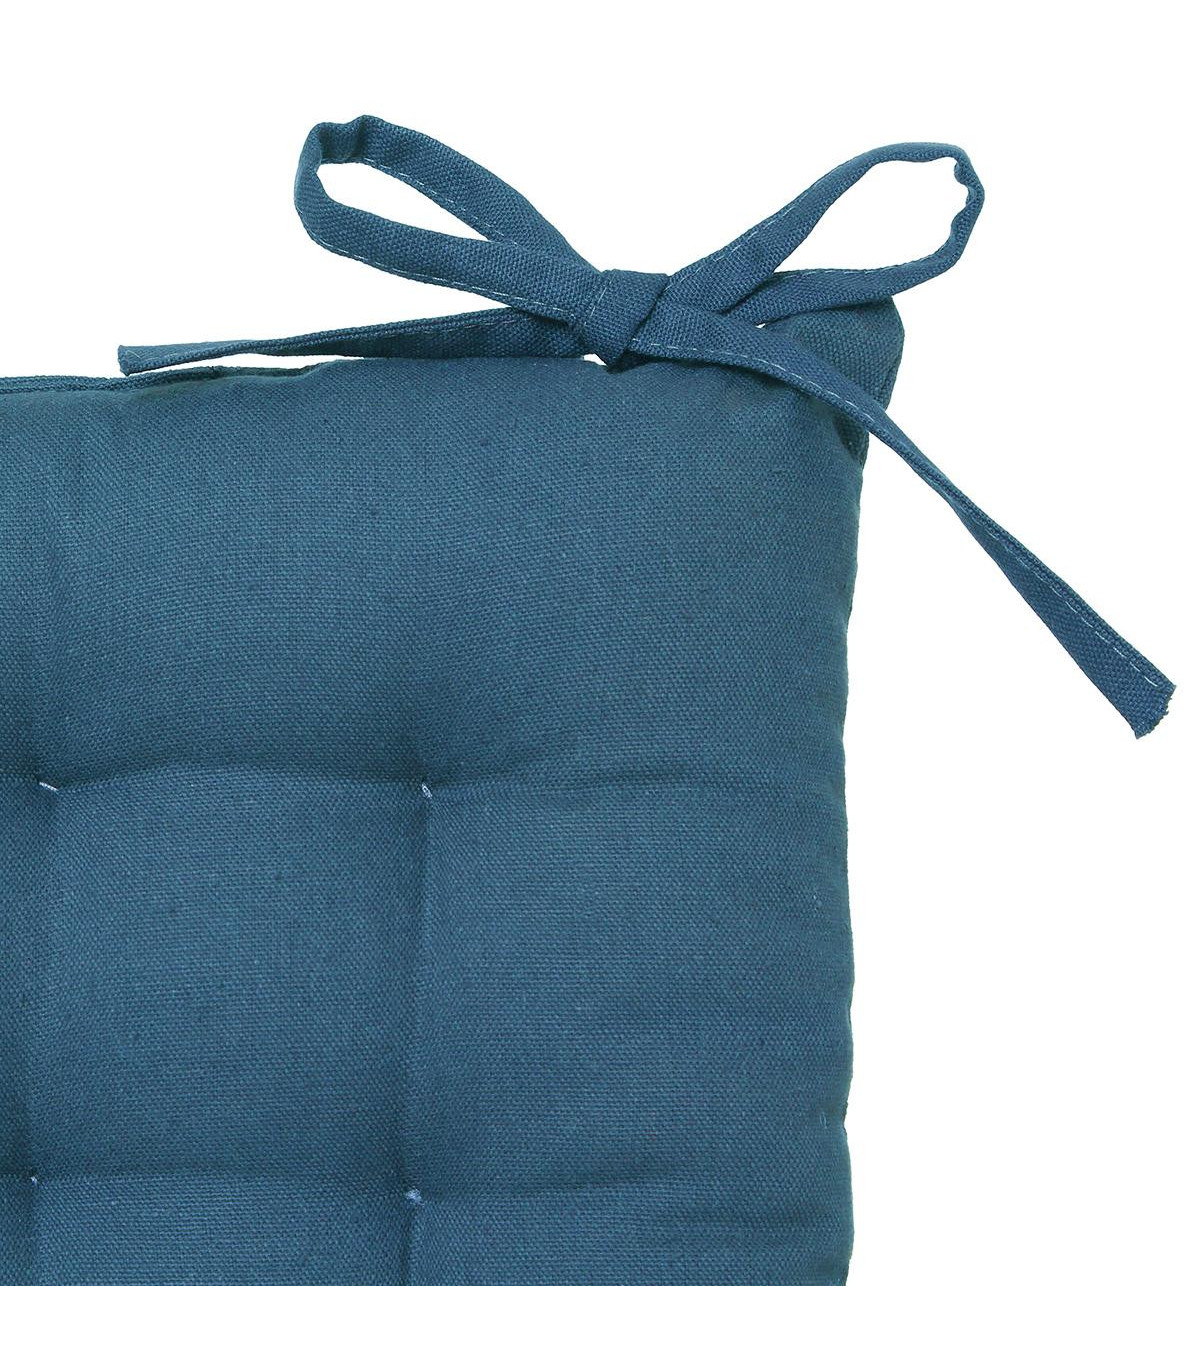 galette-de-chaise-bleu-canard-38x38 (1)